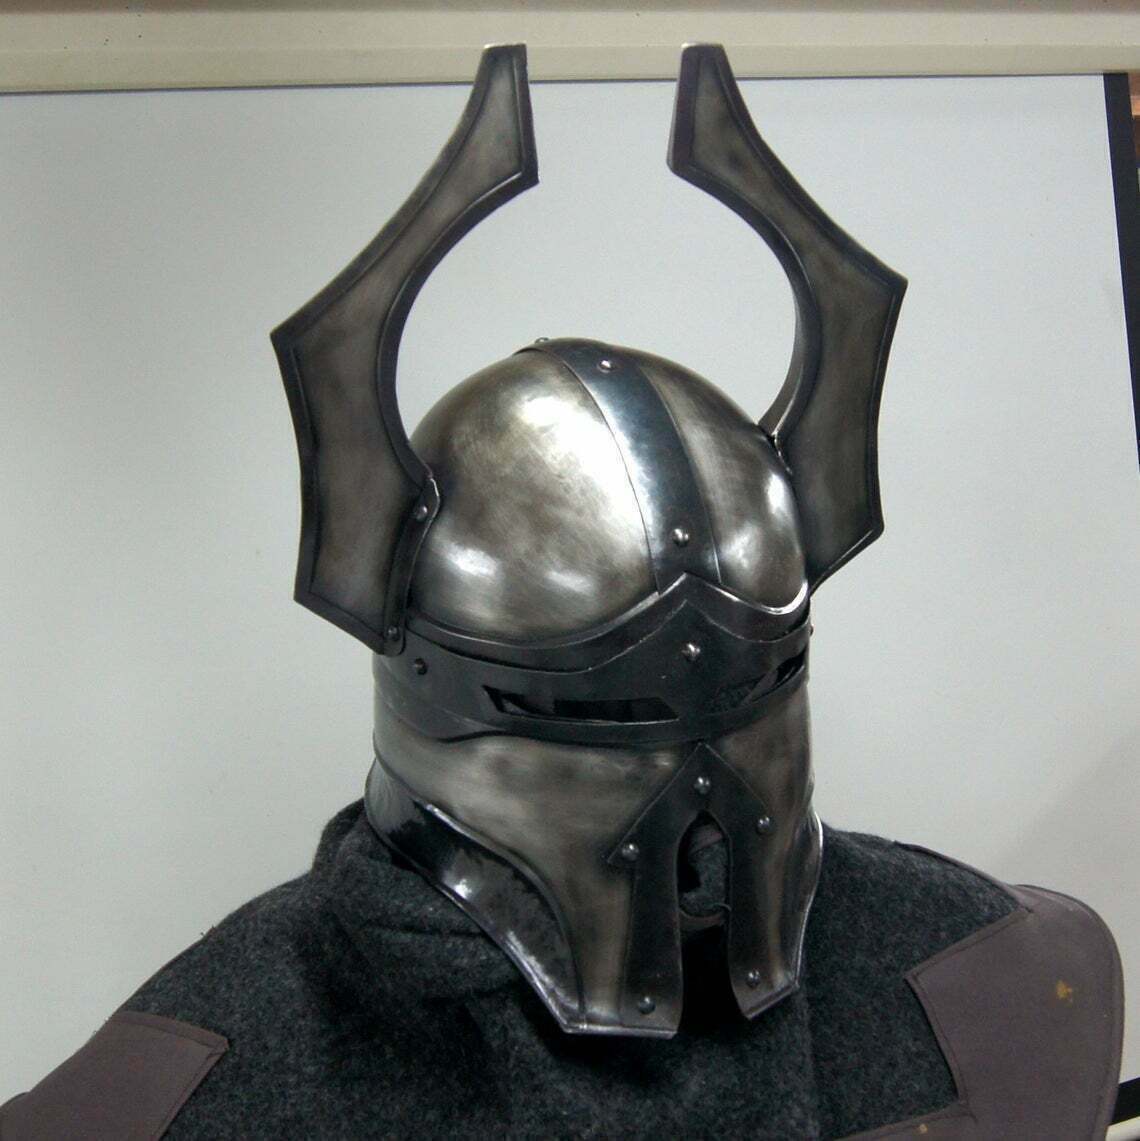 Blackened 18 Gauge Steel Medieval Warhammer Chaos Helmet Cosplay Replica Costume